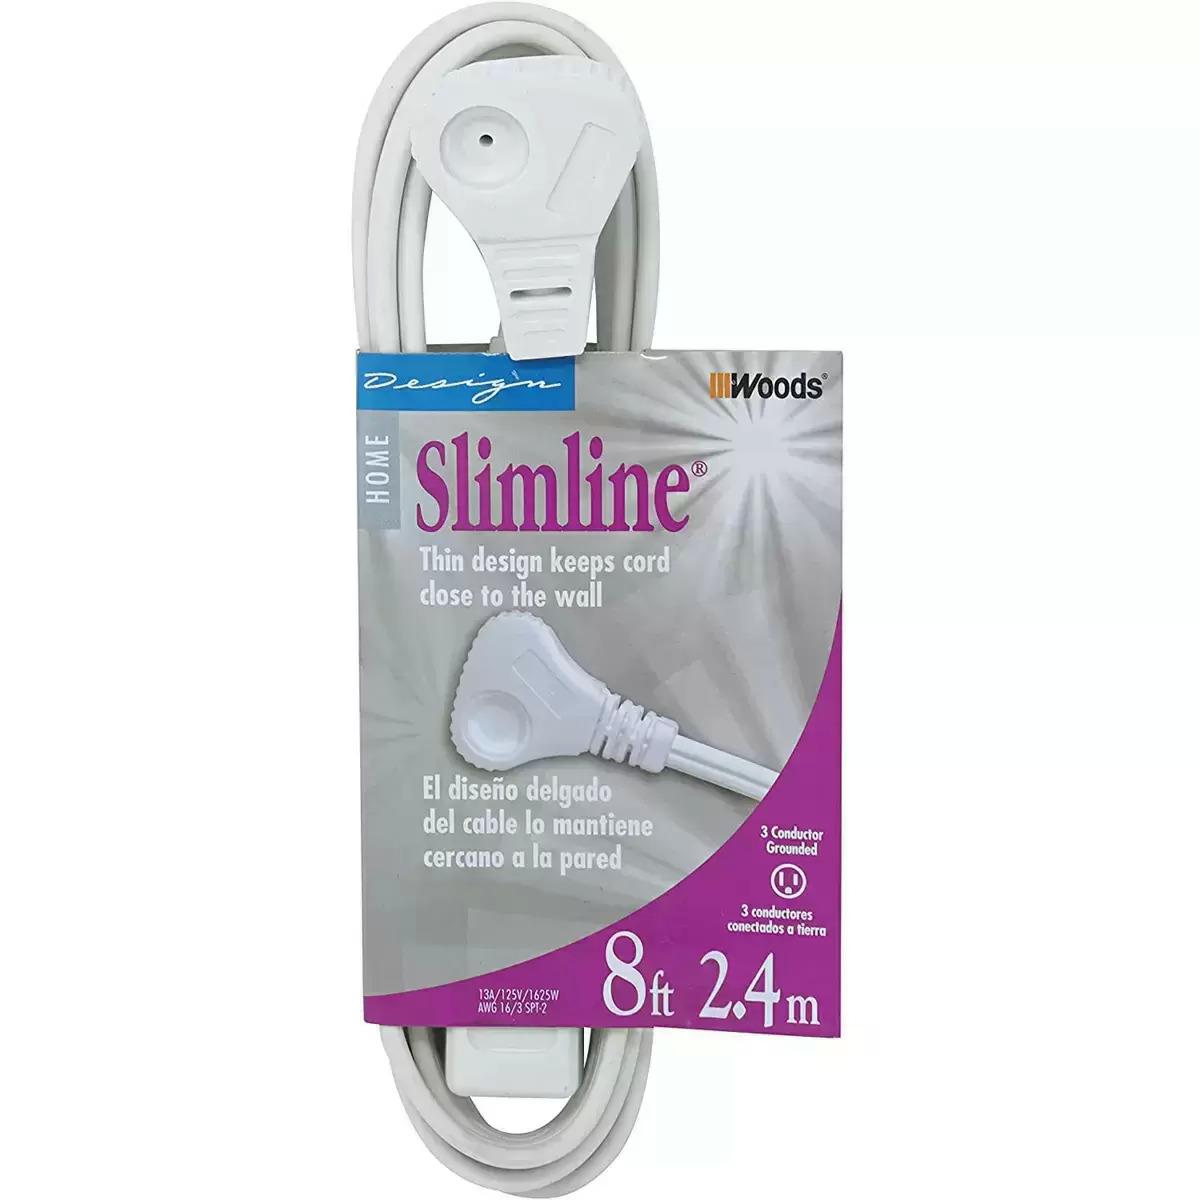 8ft Woods SlimLine 3-Outlet 16/3 Flat Plug Indoor Extension Cord for $4.48